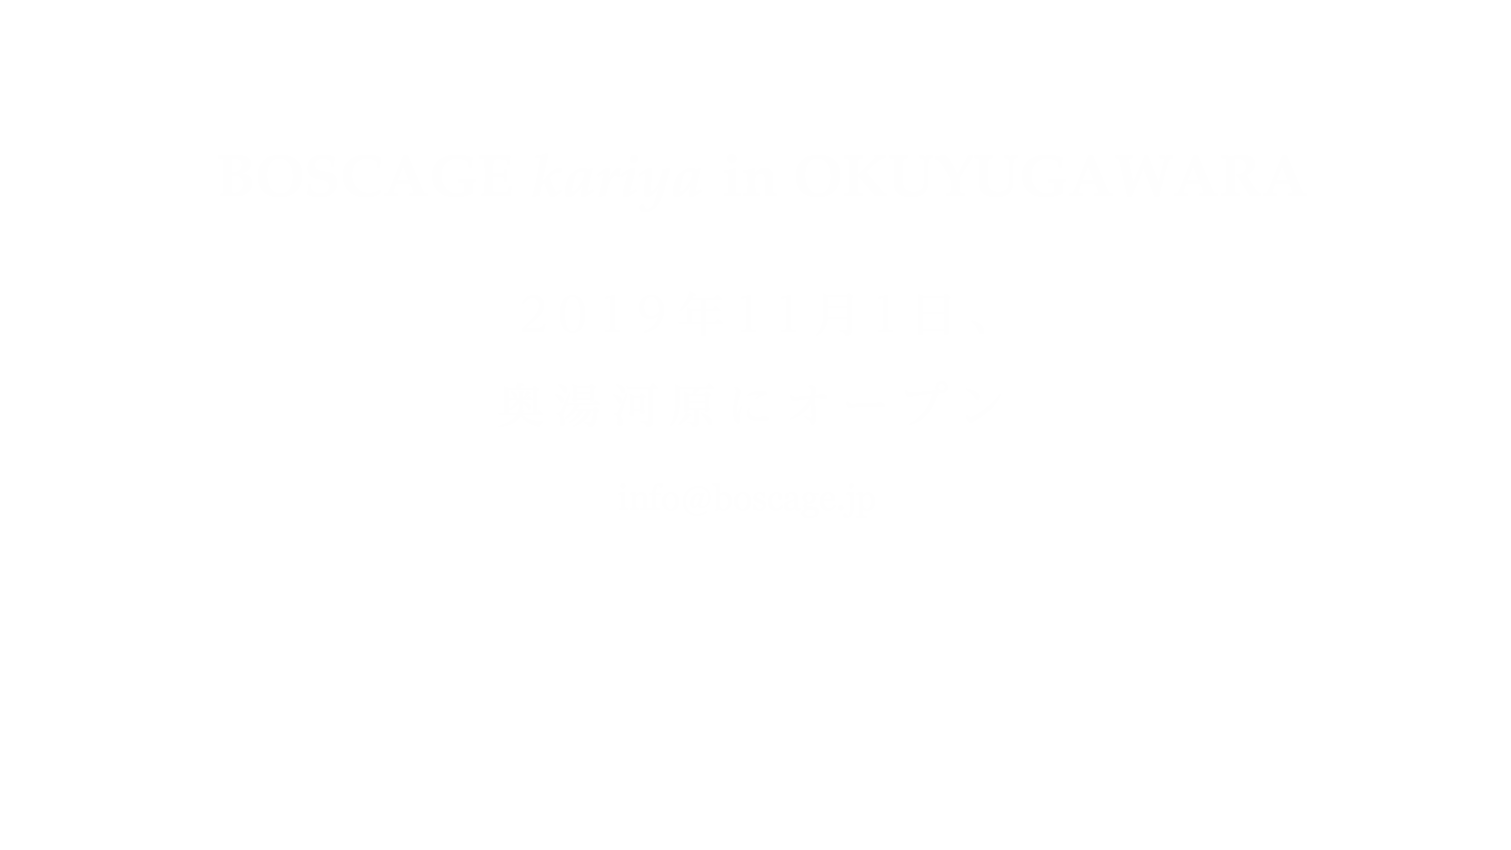 BOSCAGE kariya OKUYUGAWARA 2019年11月1日、奥湯河原にオープン